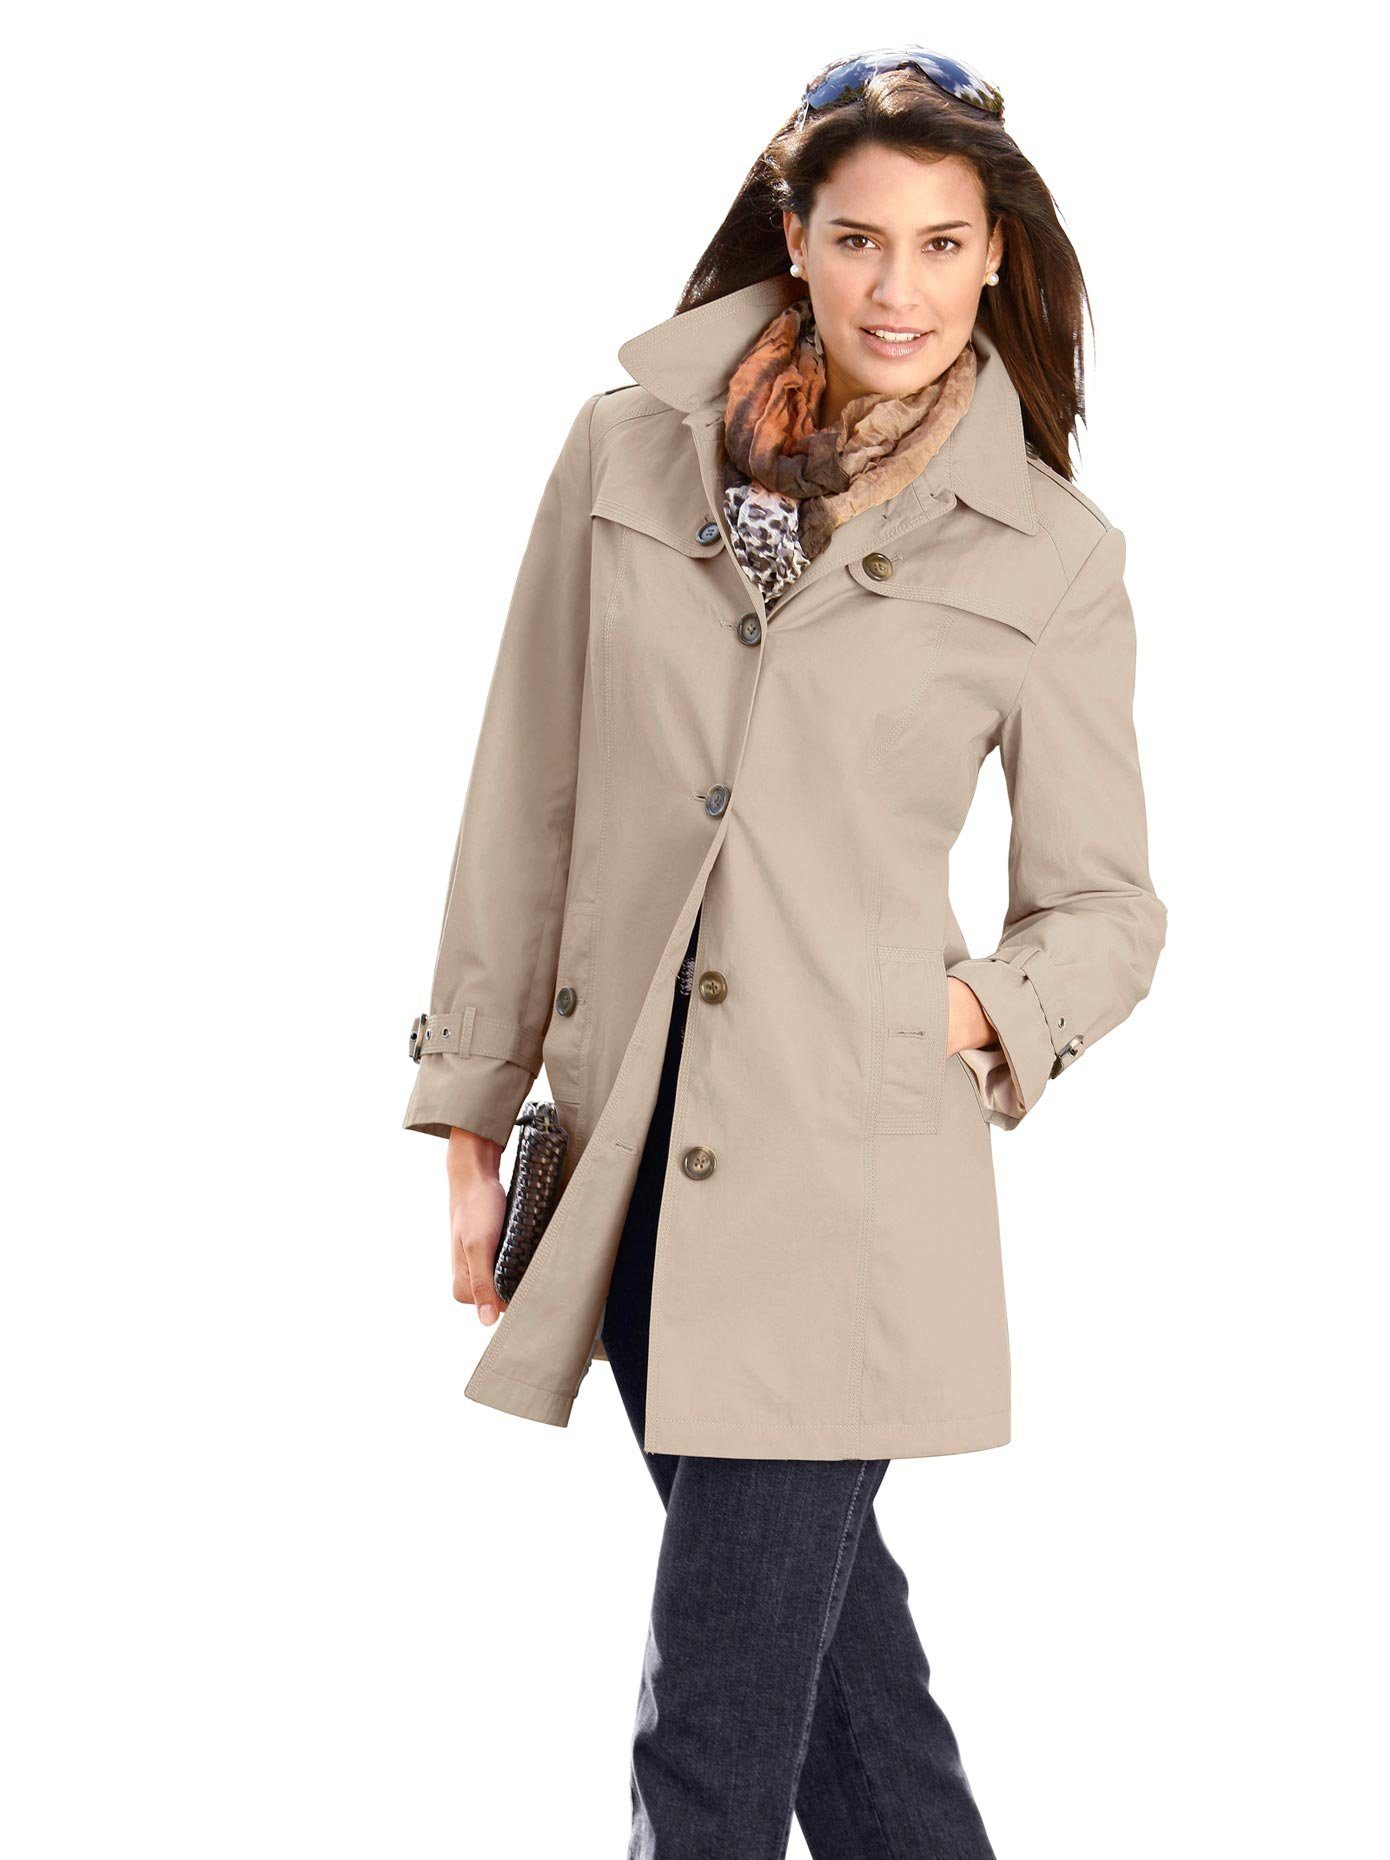 Mantel für Damen » Damenmäntel online kaufen| OTTO